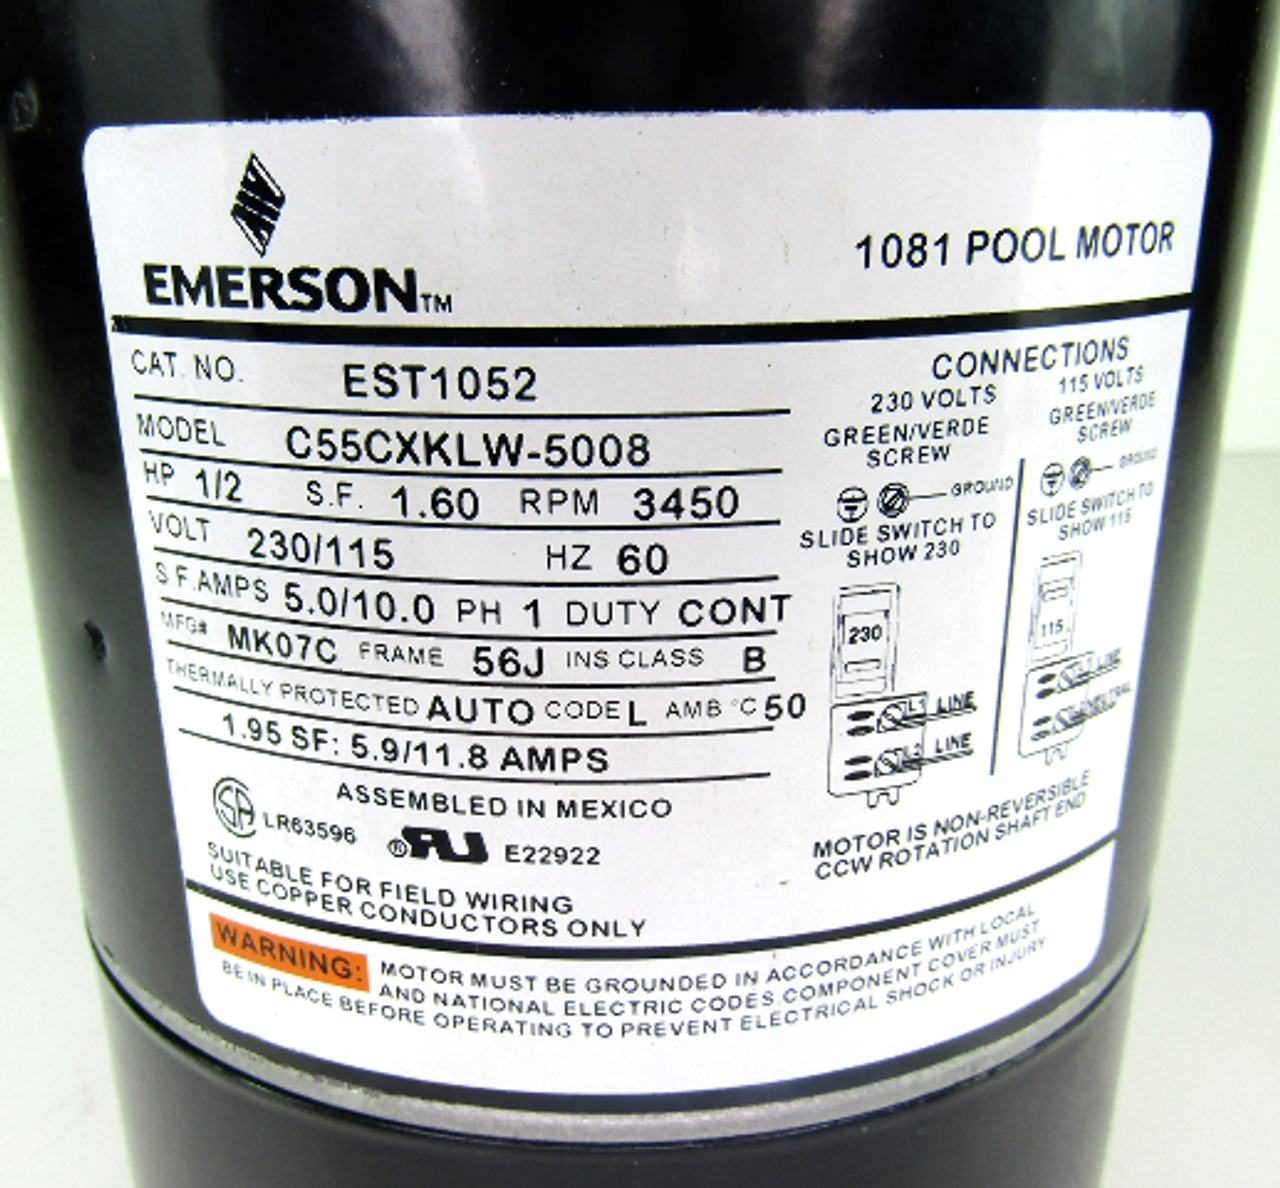 Emerson C55CXKLW-5008, 1081 Pool Motor, 1/2HP, 3450RPM, 230/115V